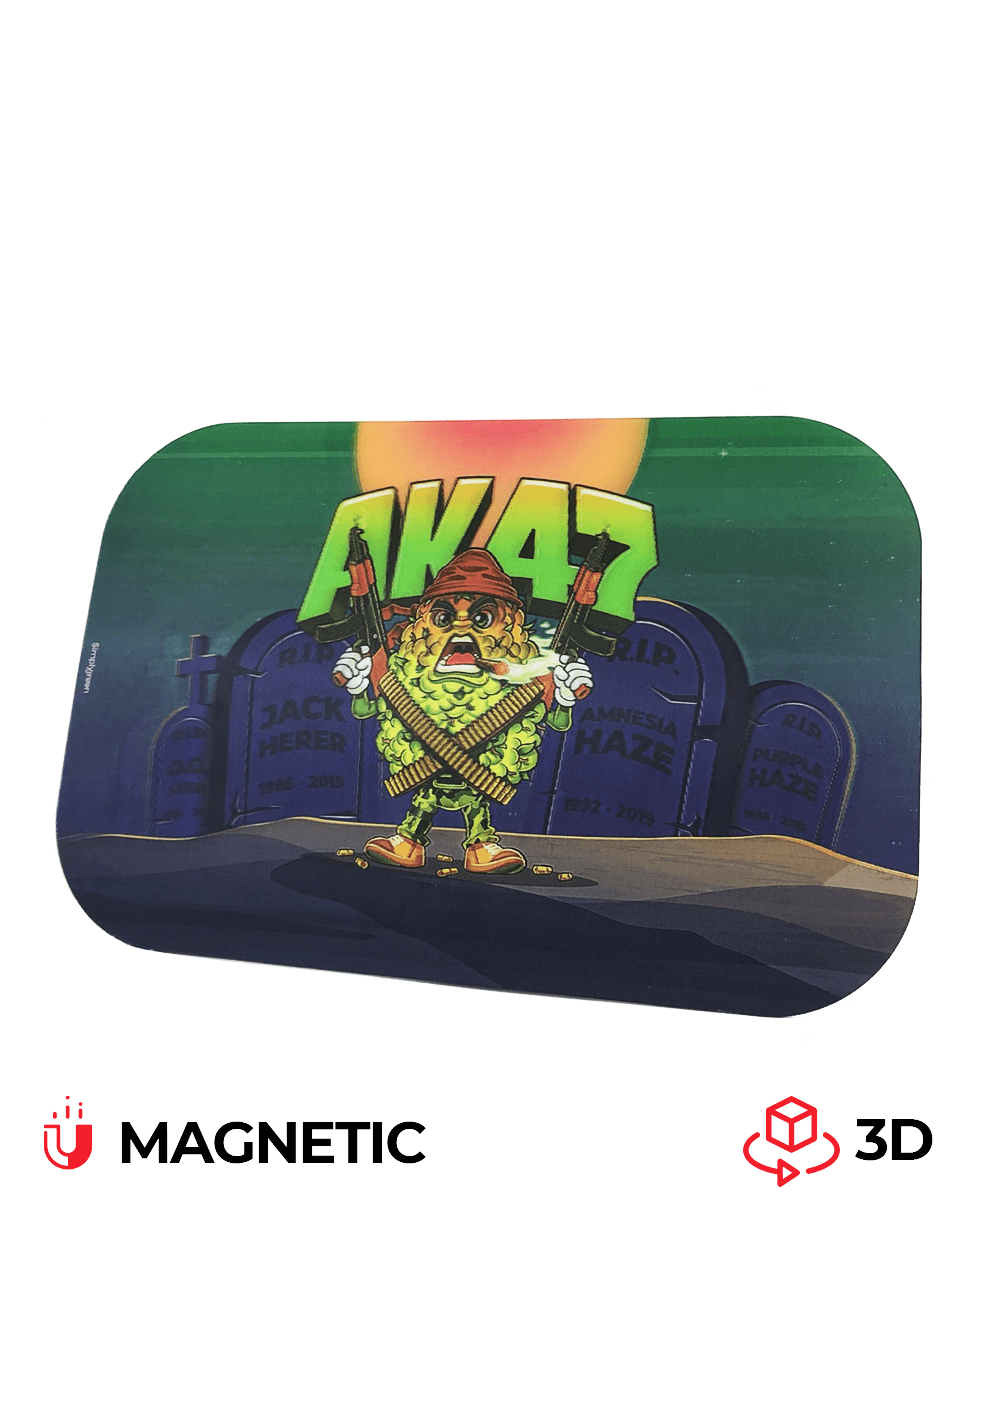 Cover Magnetica in 3D per Vassoi in Metallo misura Media cm 17x27 - AK 47 - Best Buds